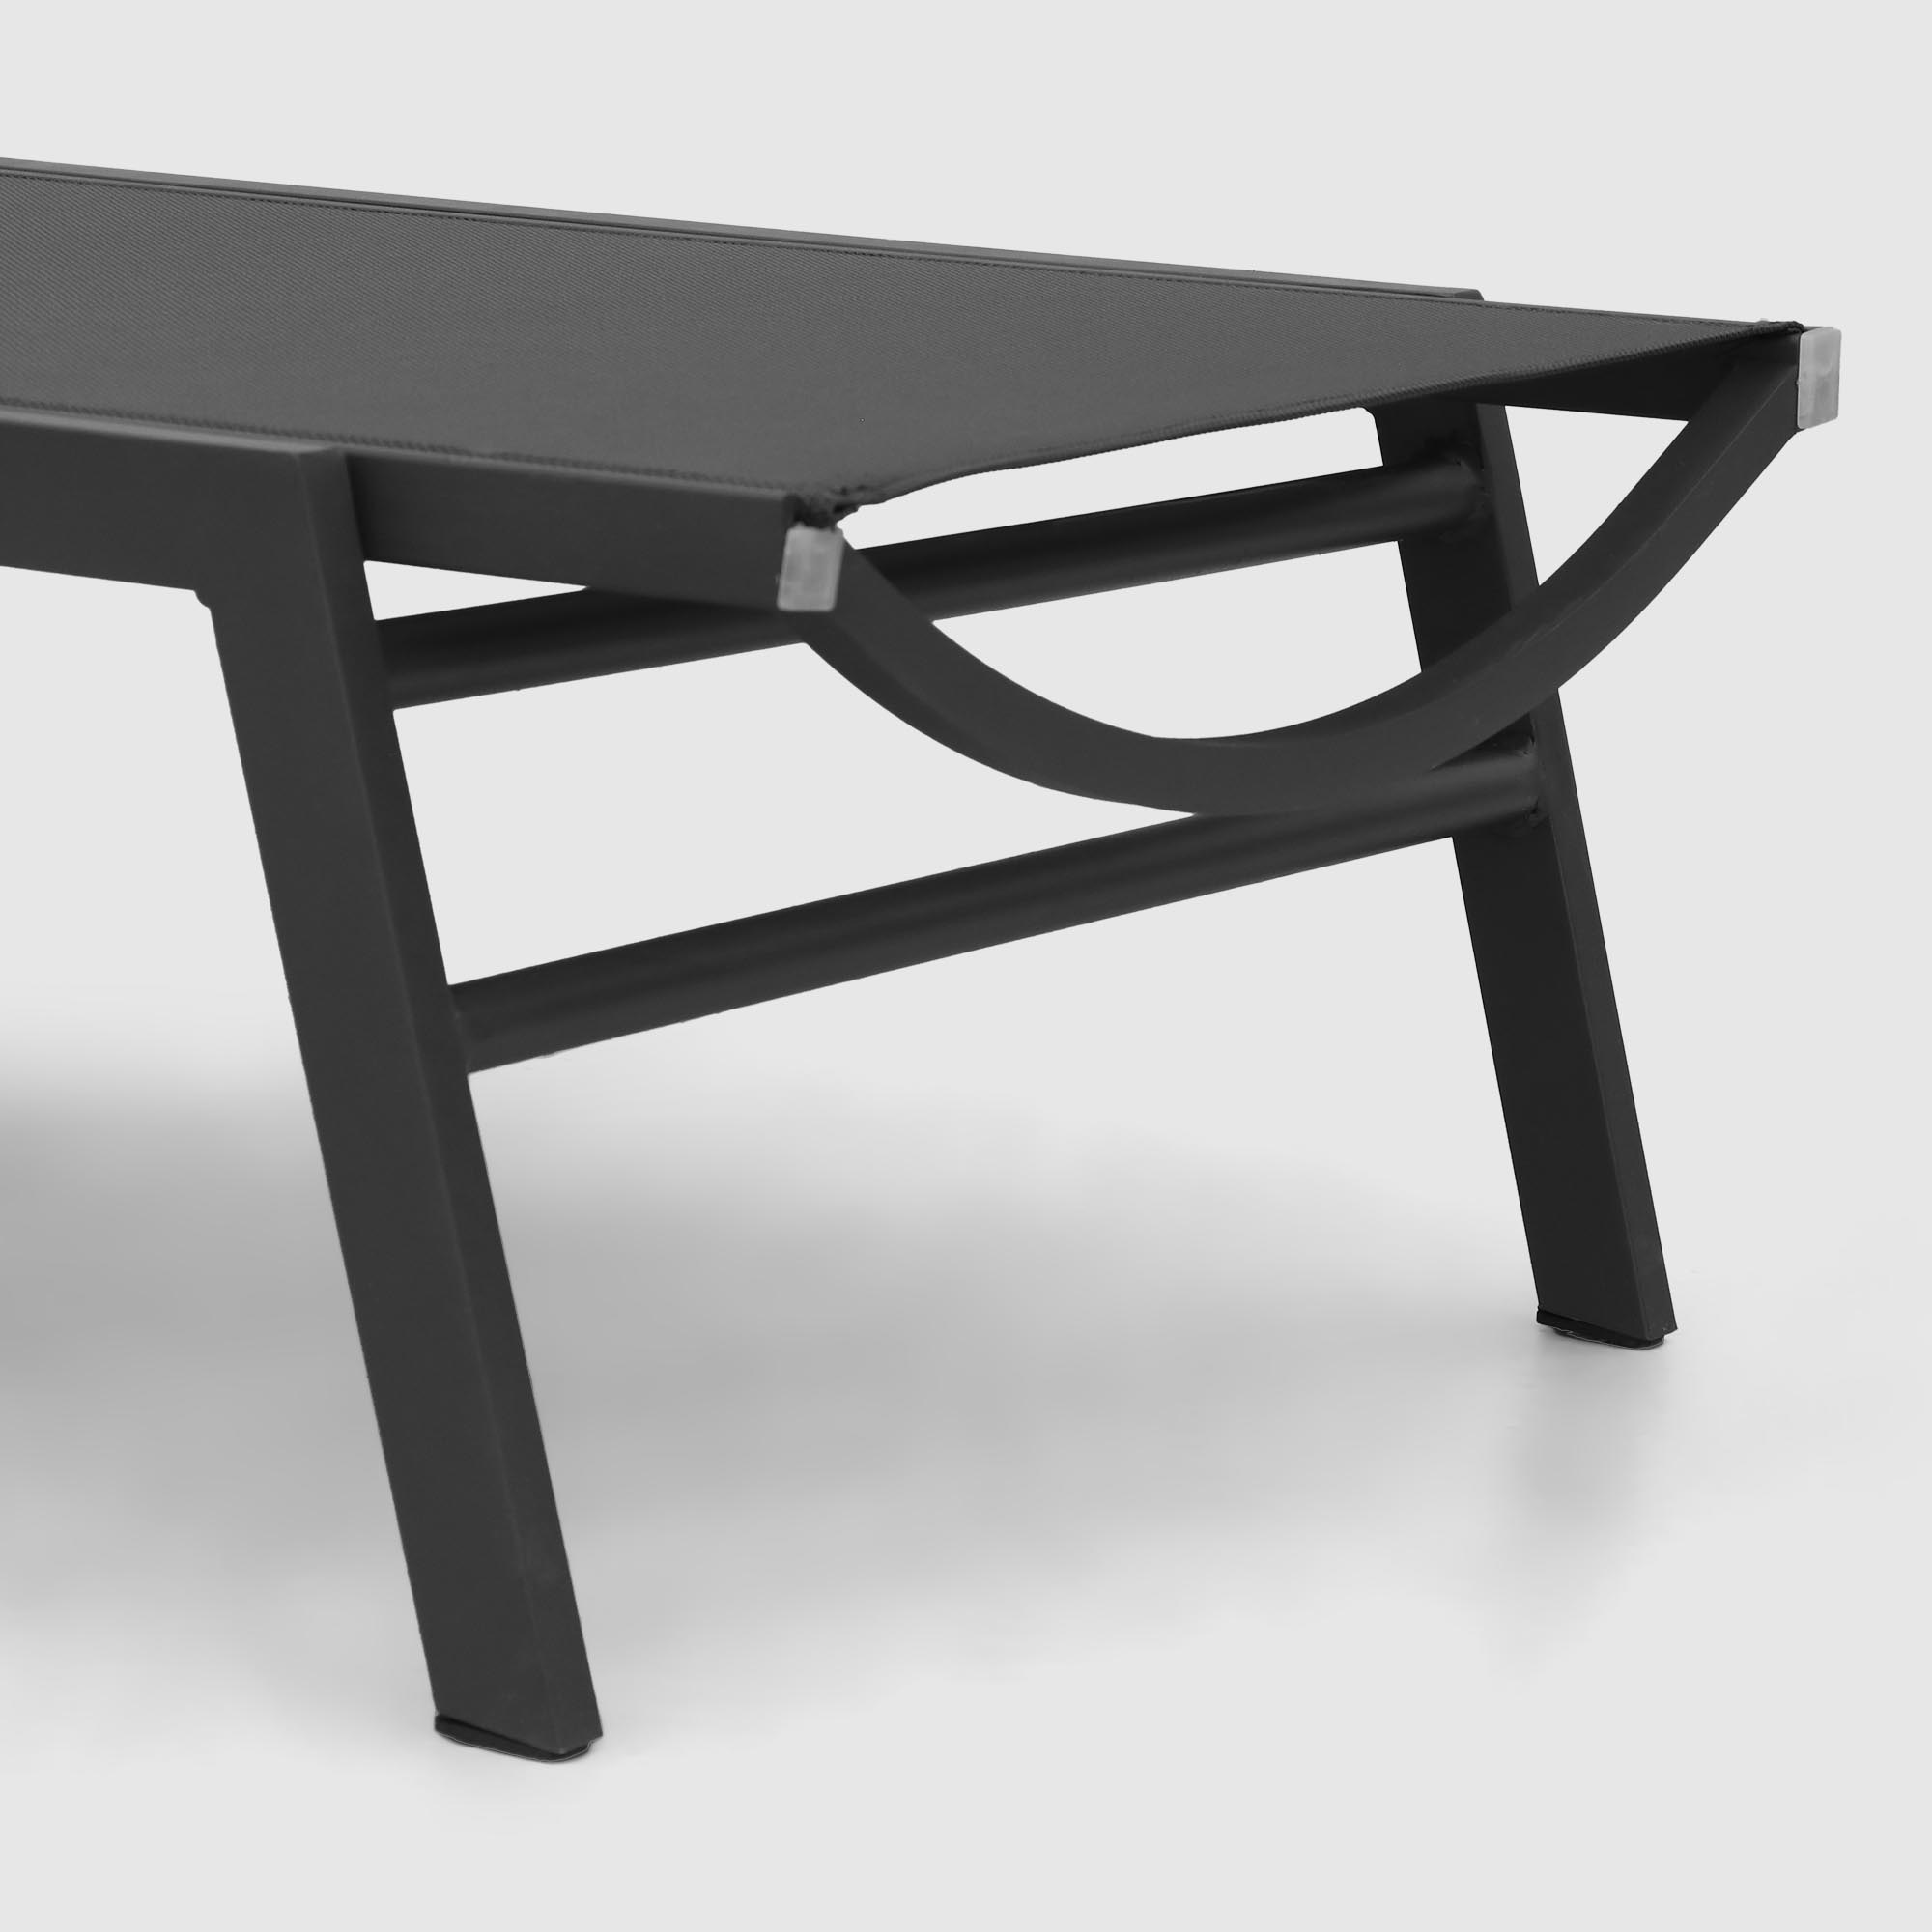 Комплект мебели Emek garden столик и два шезлонга 3 предмета, цвет черный - фото 10